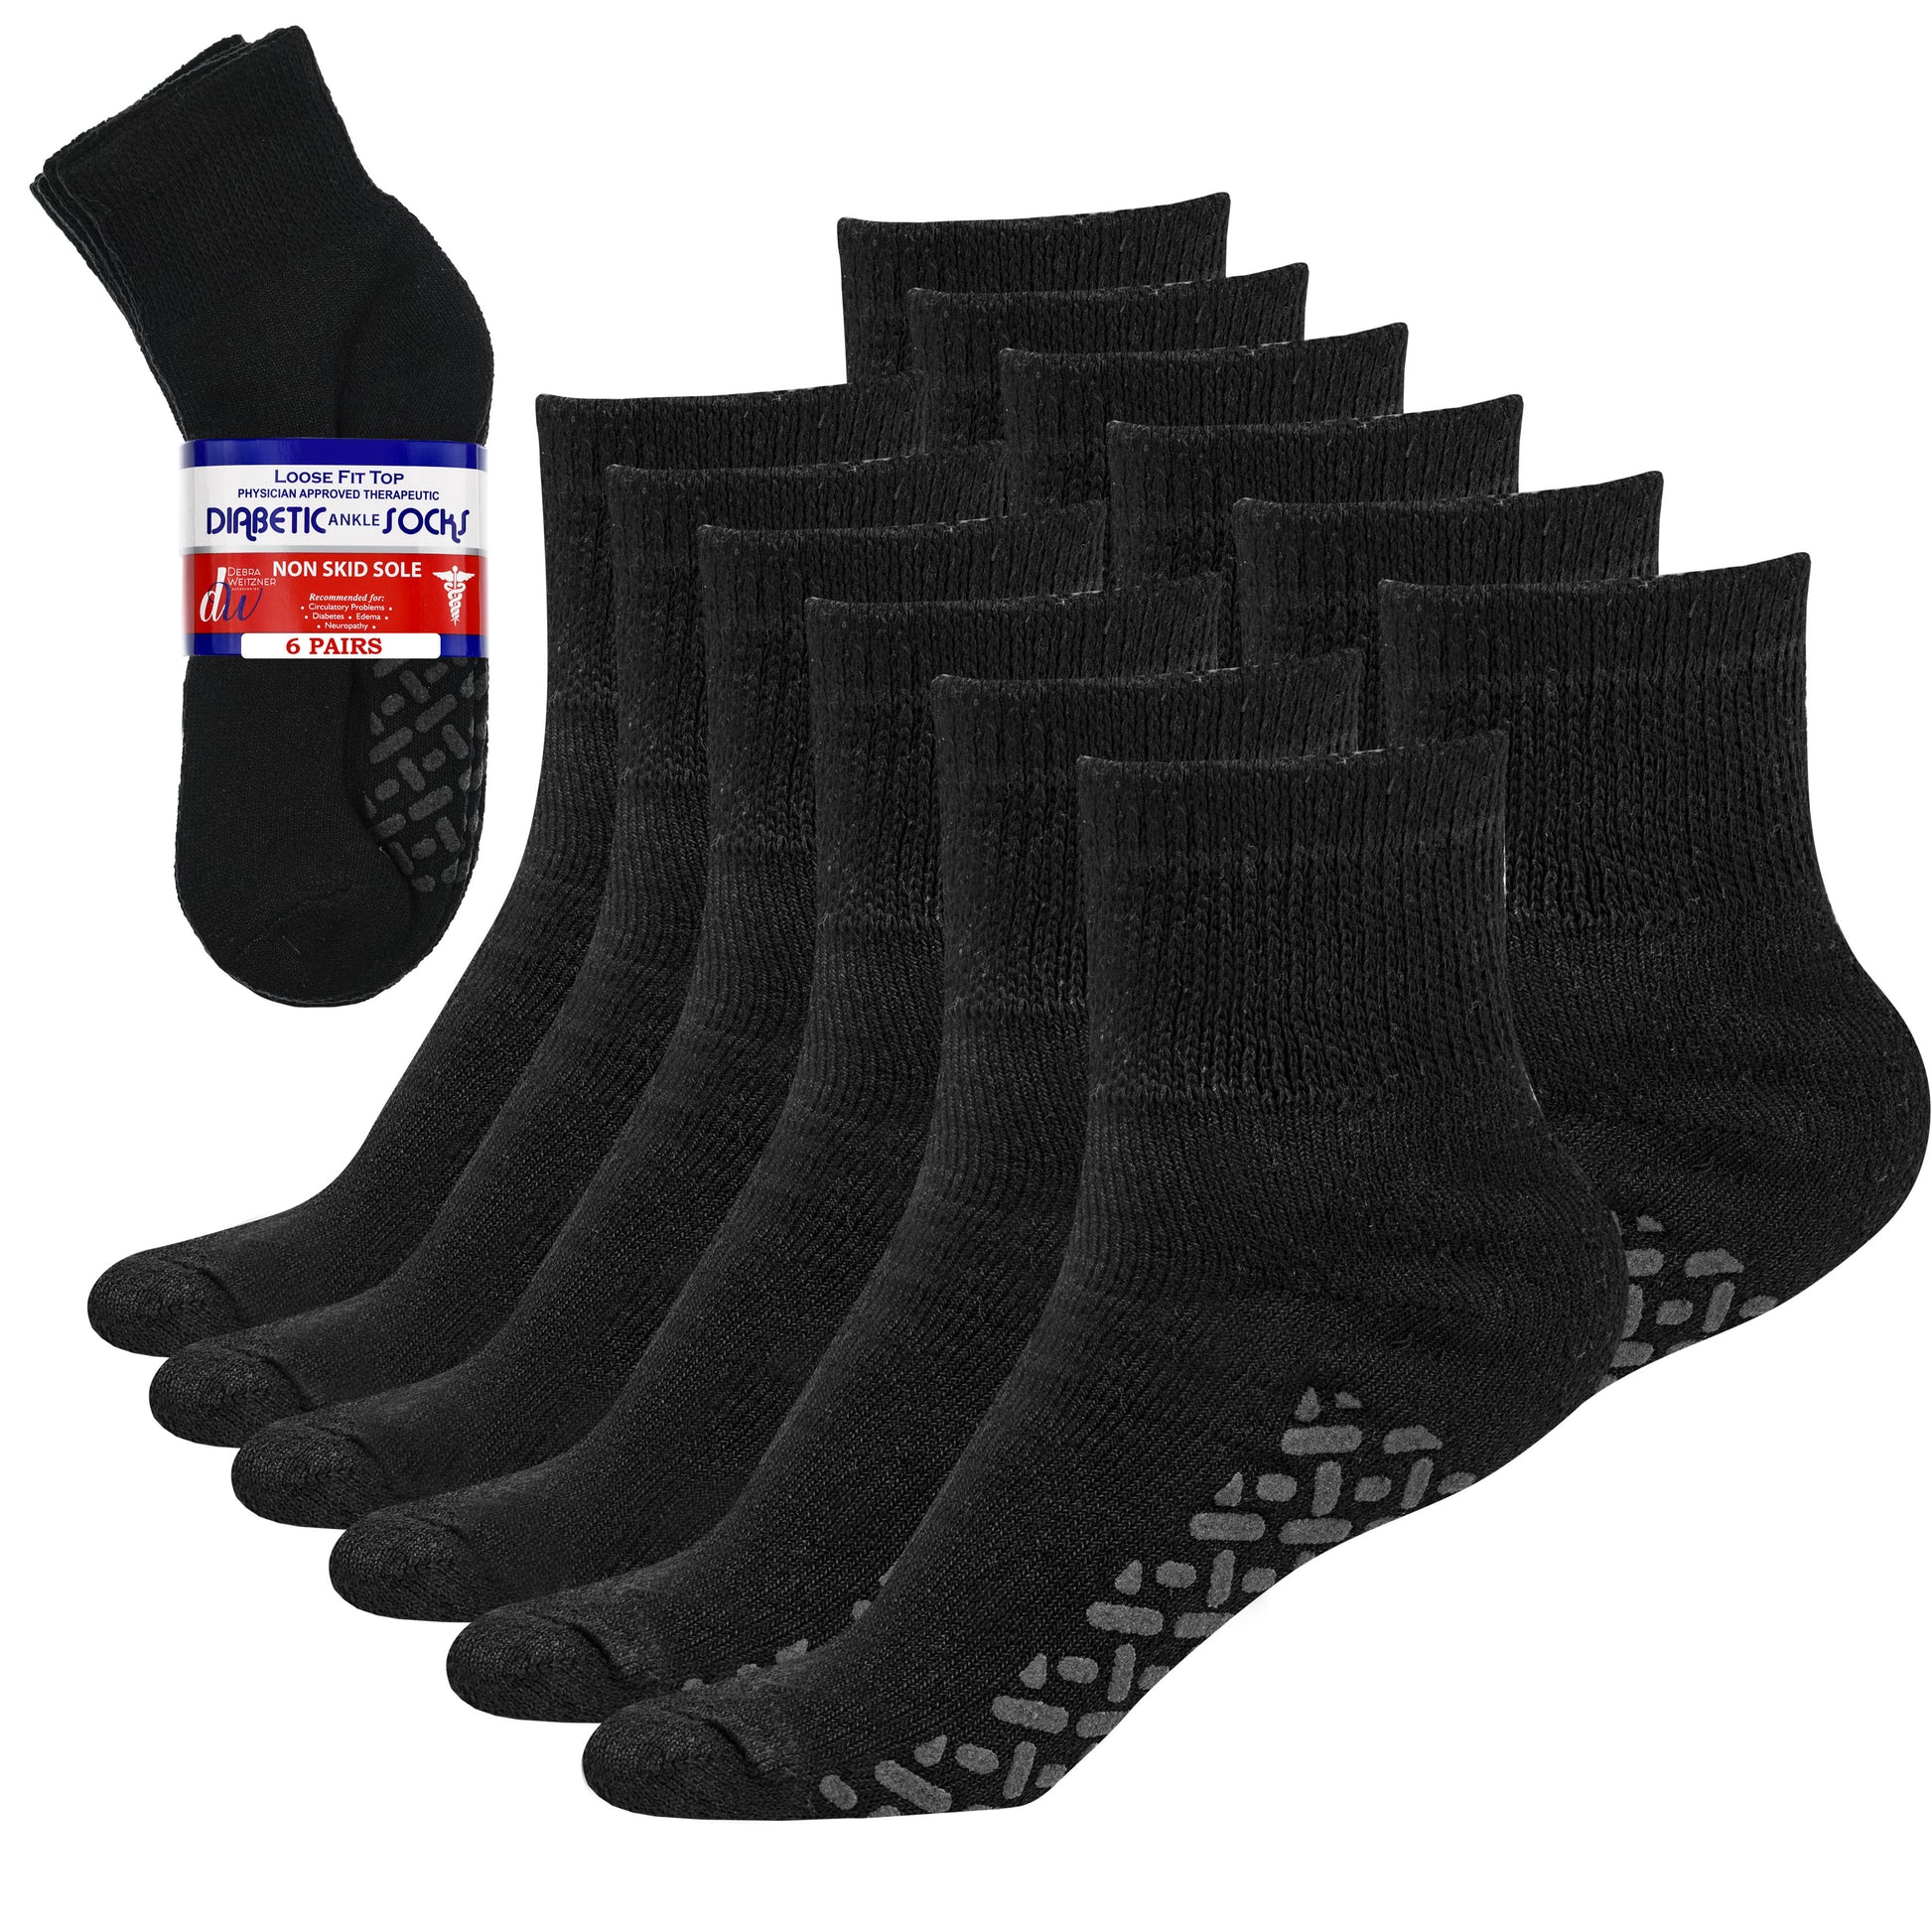  Diabetic Non Skid Slipper Socks/w Grippers for Men - 6